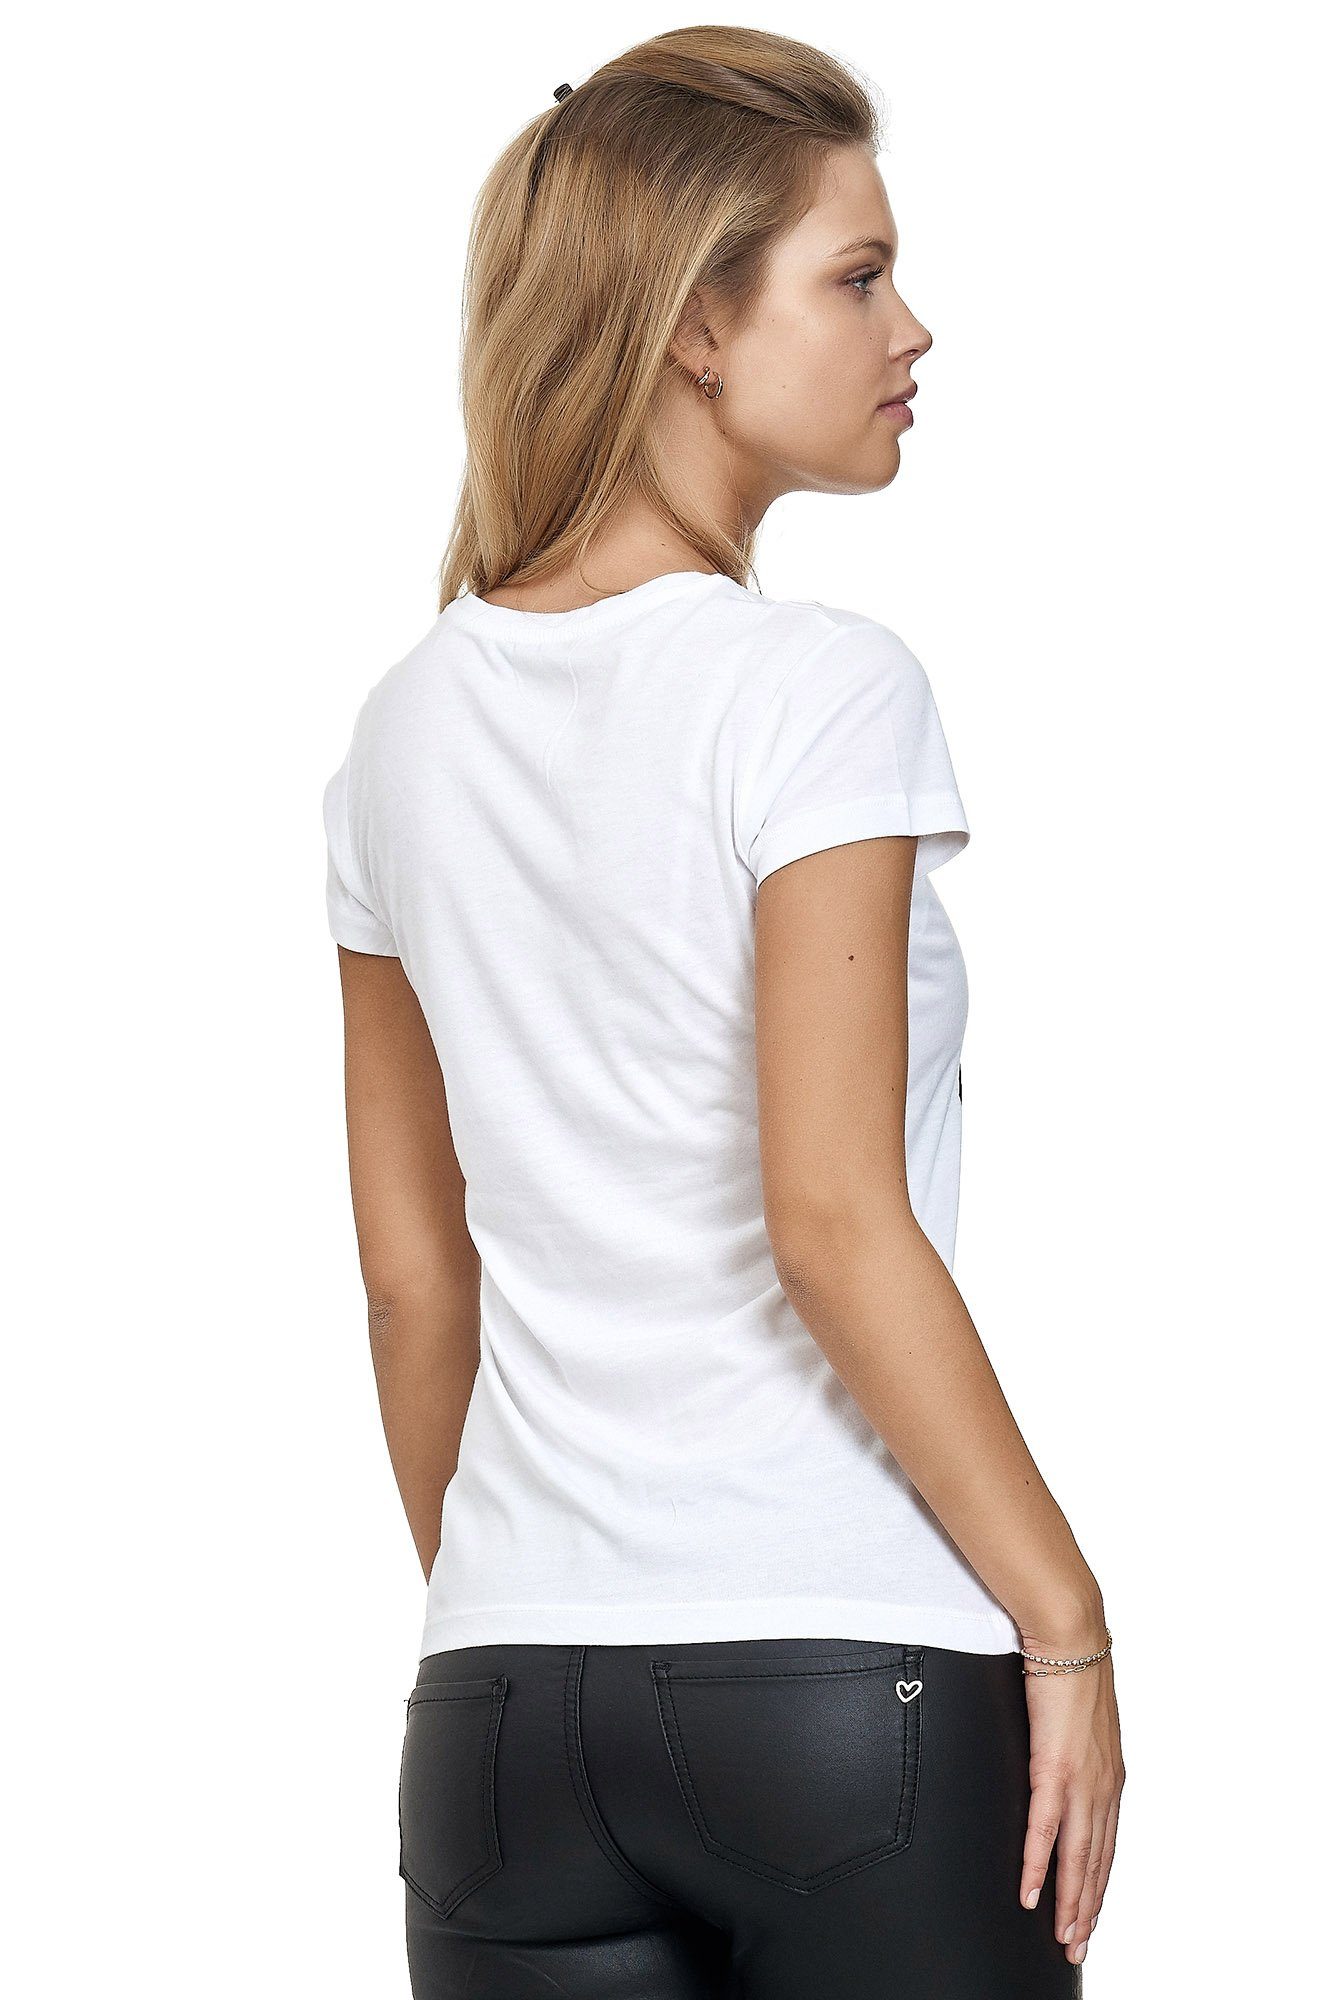 Decay T-Shirt mit glänzendem Frontprint weiß